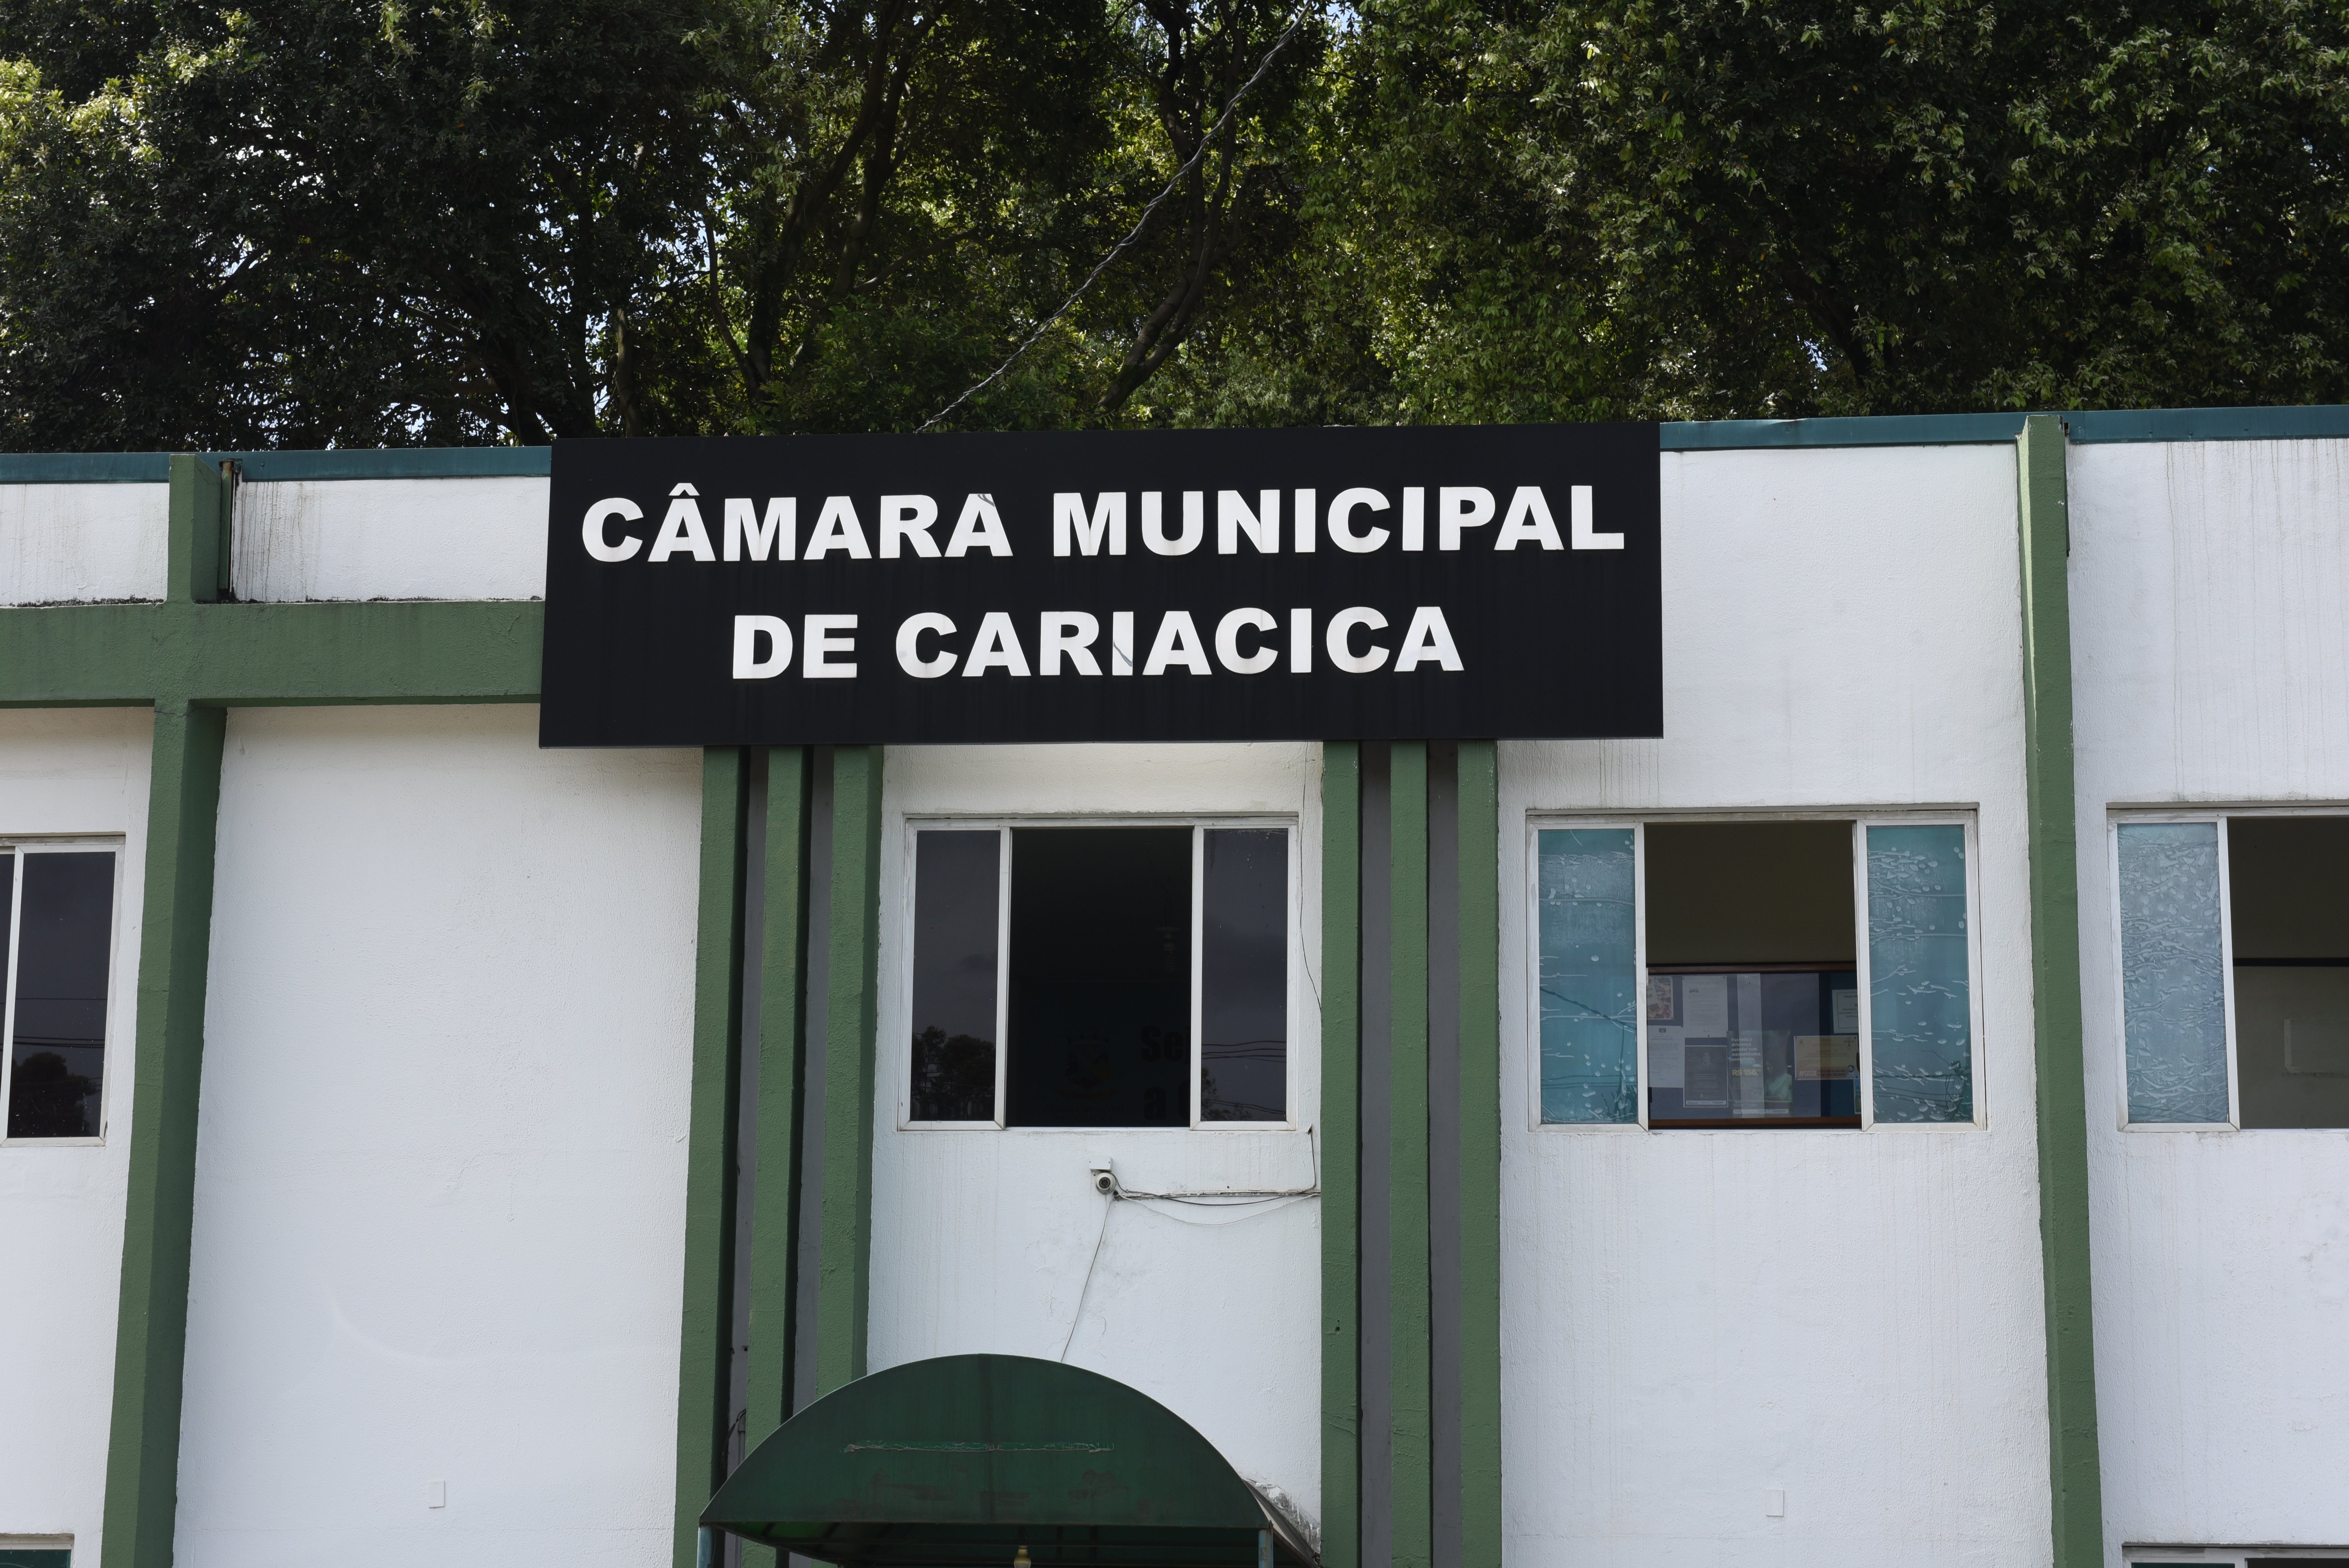 Prefeitura Municipal de Cariacica